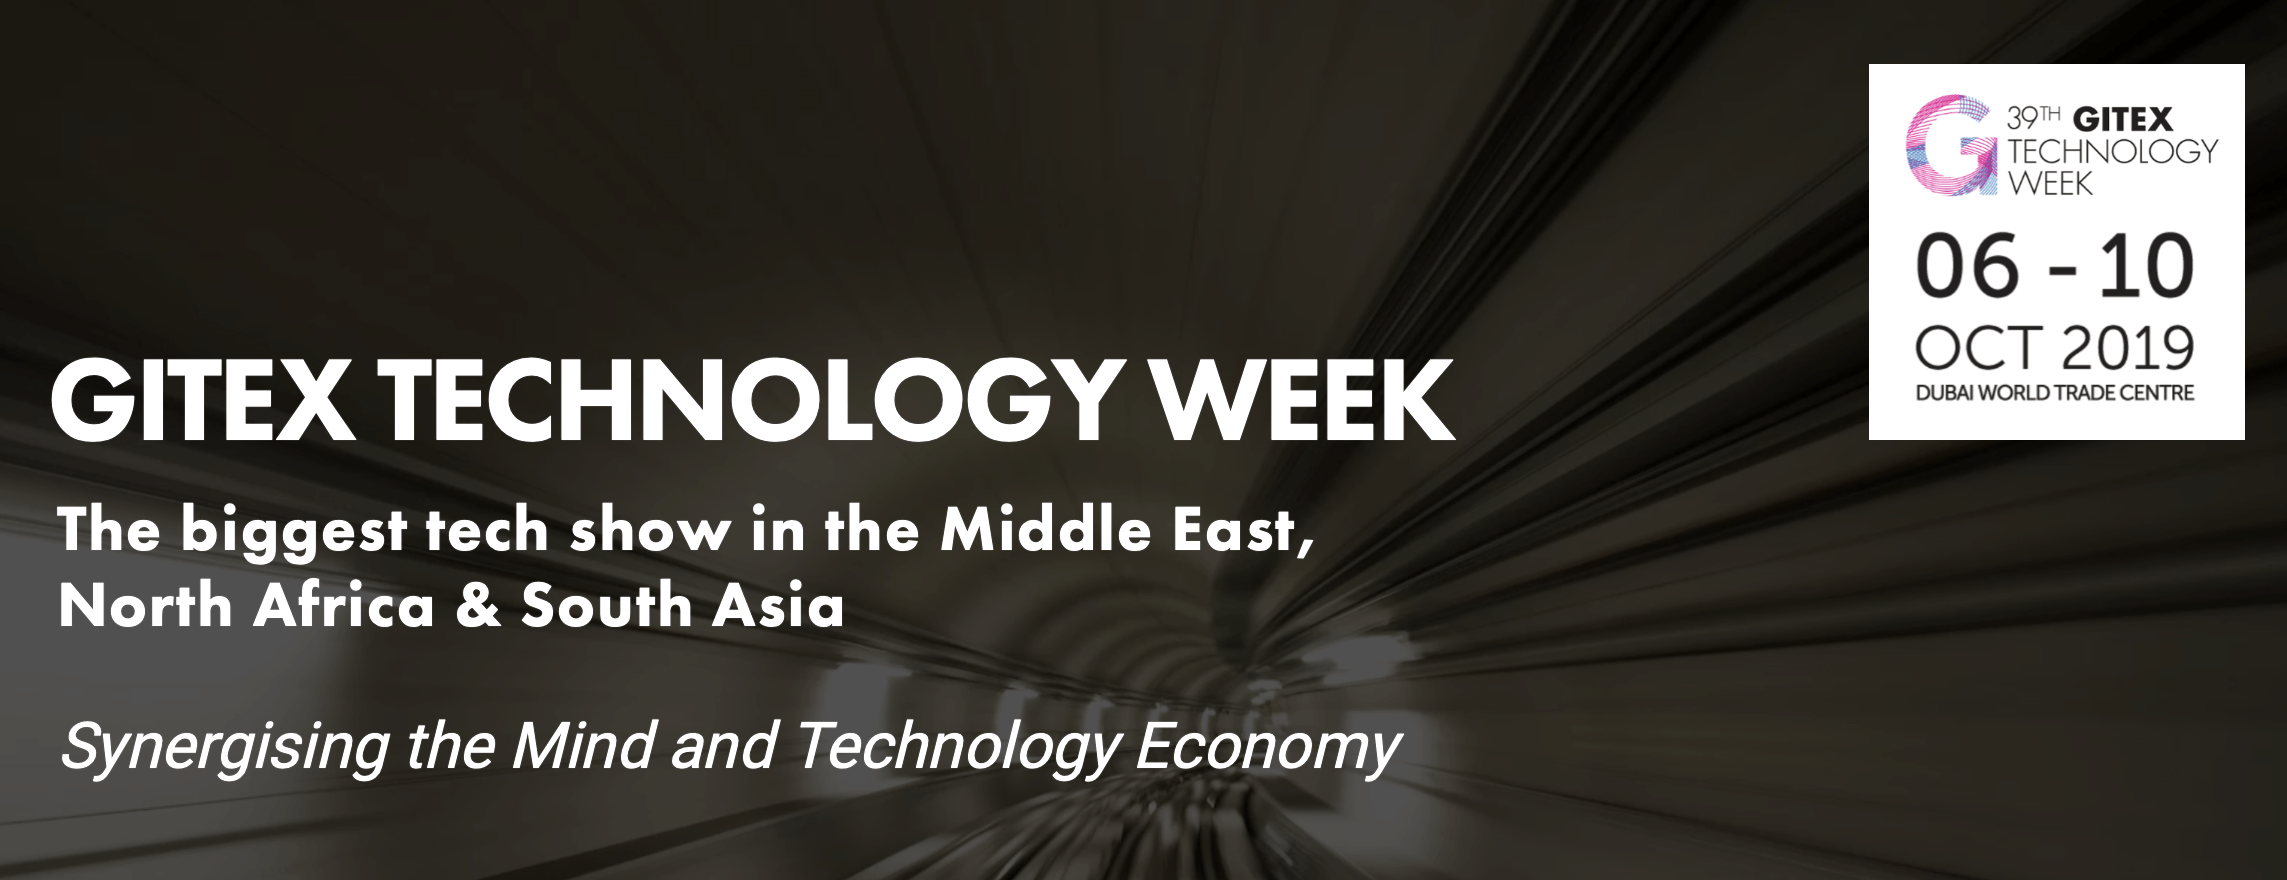 GITEX Technology Week 2019 - Coming Soon in UAE